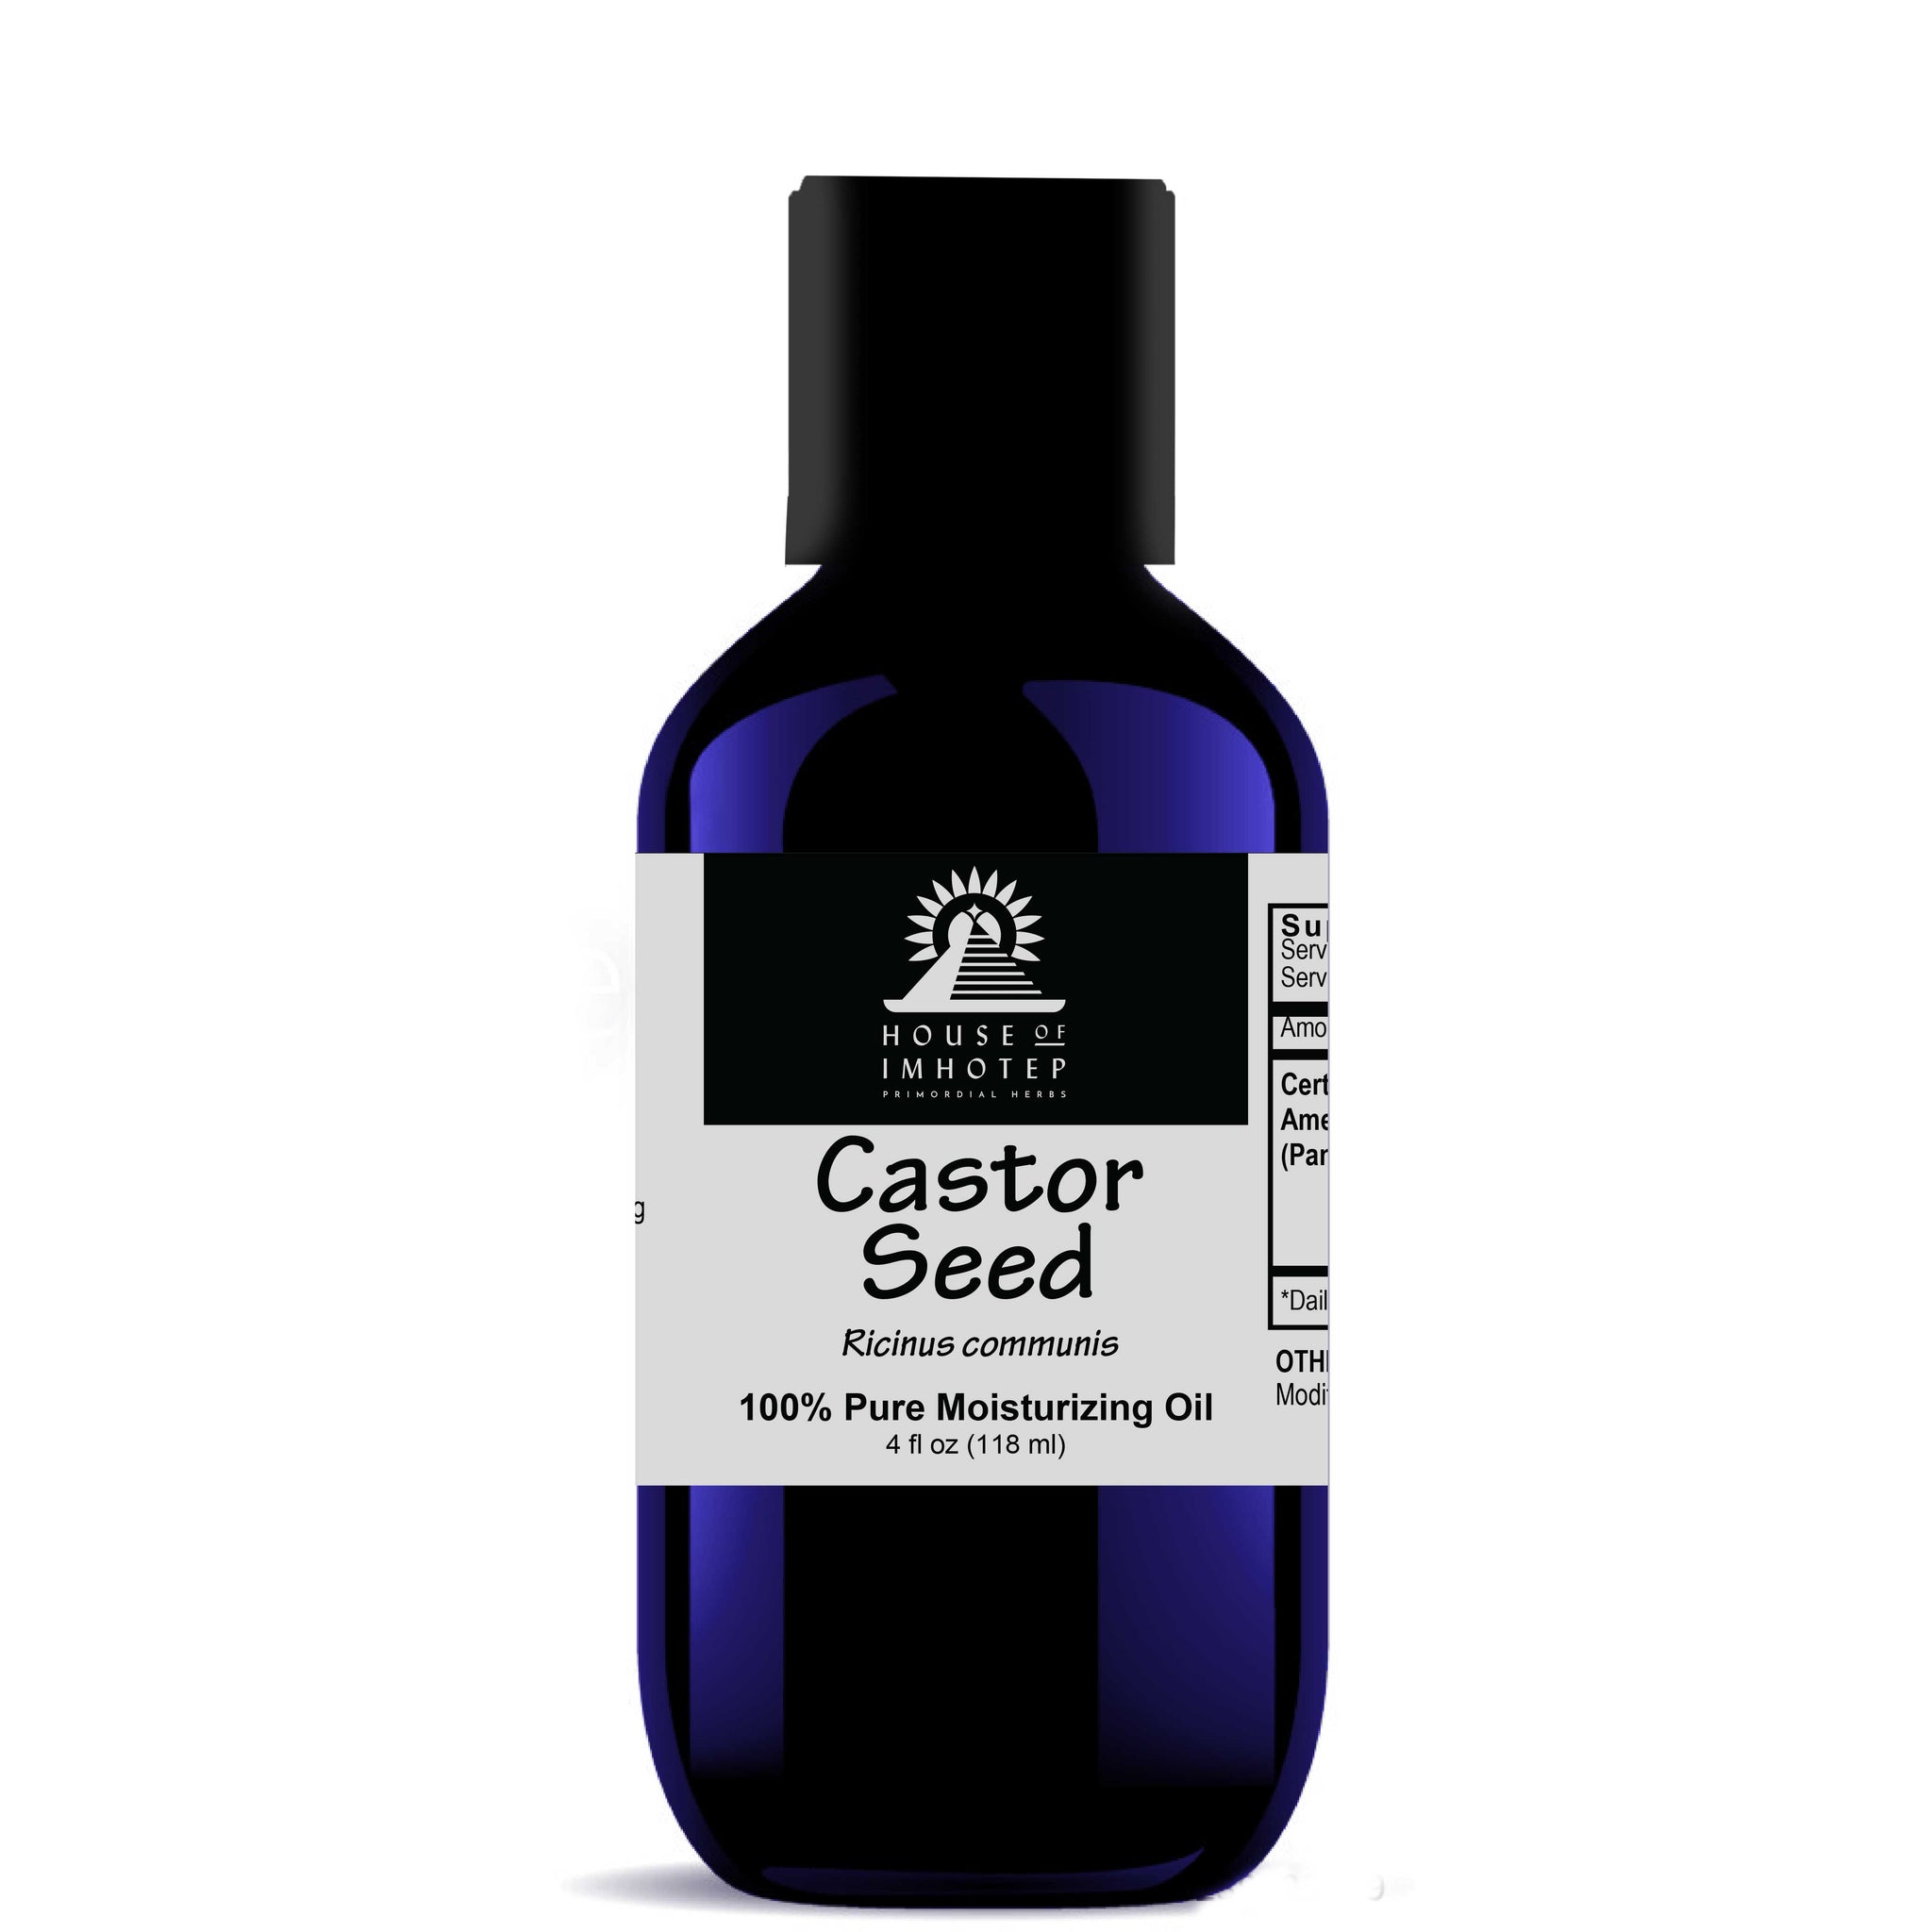 Castor seed oil